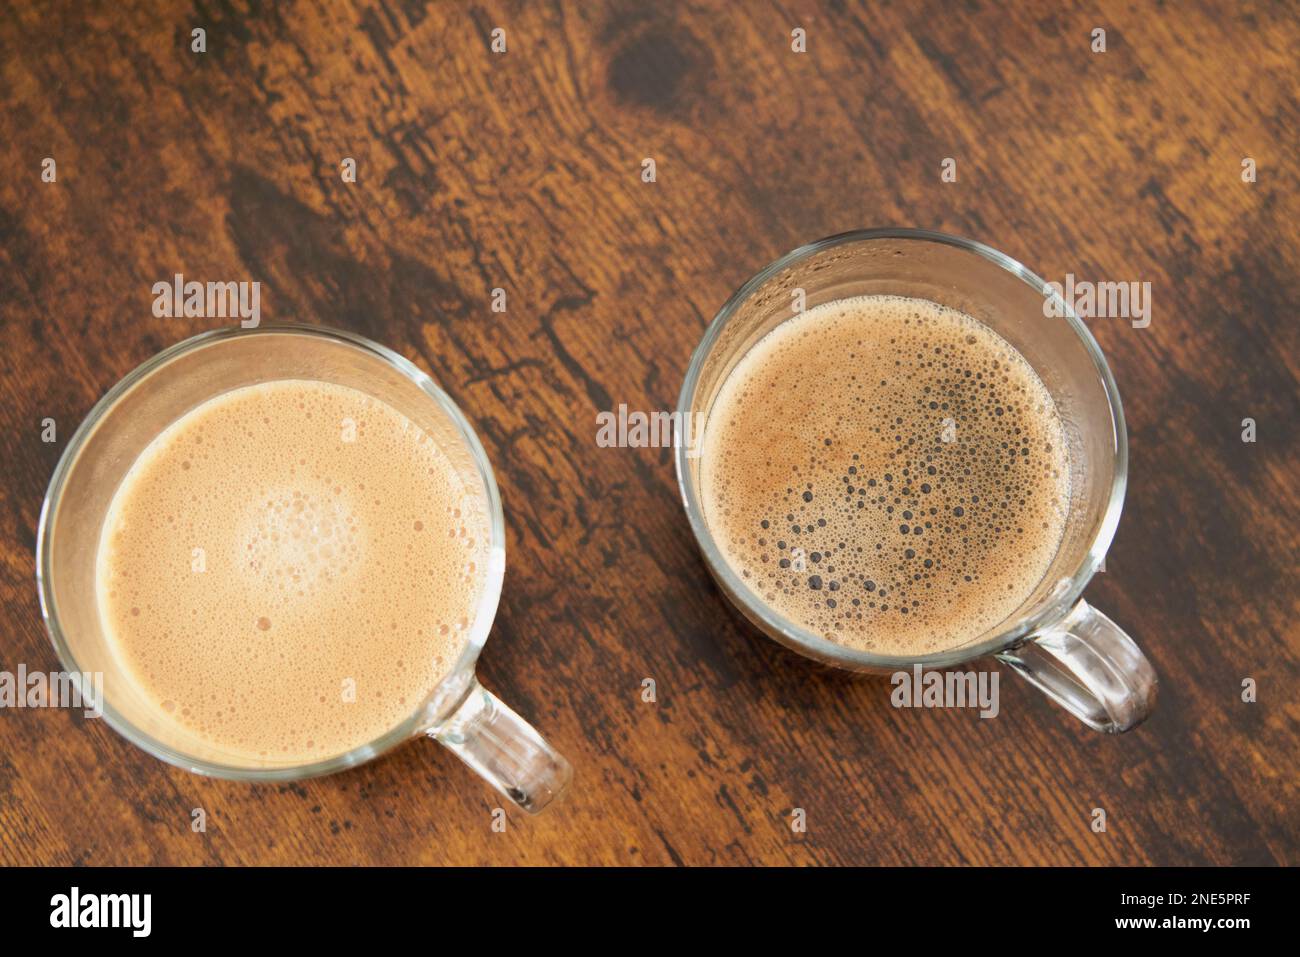 Tazze di latte e caffè nero con capsule nespresso